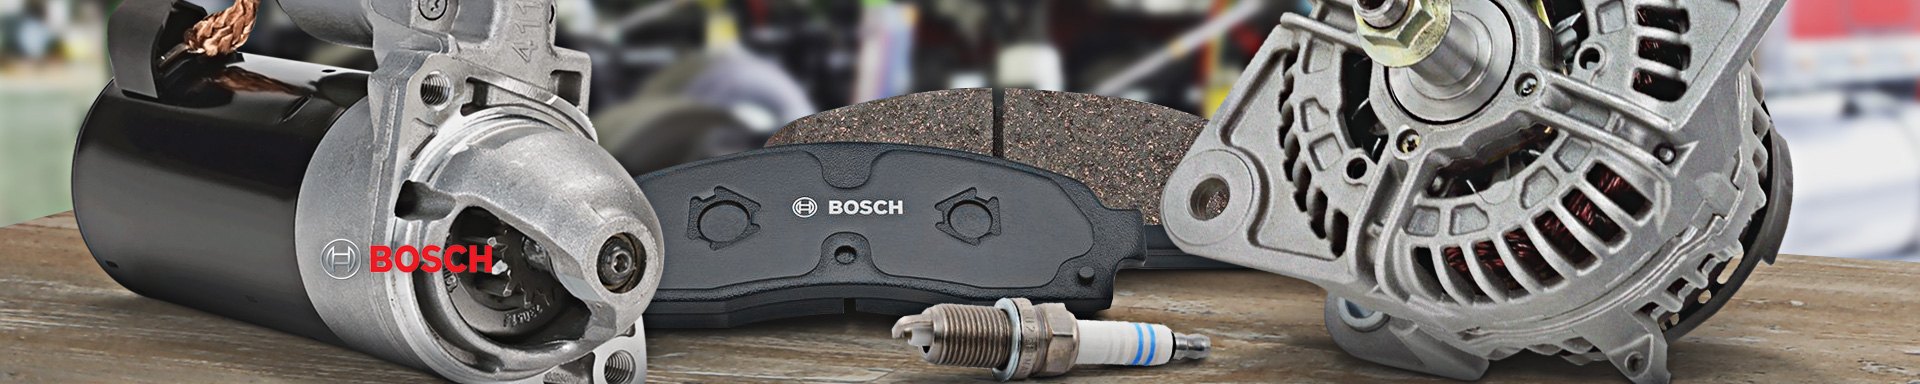 Bosch Car Bulbs